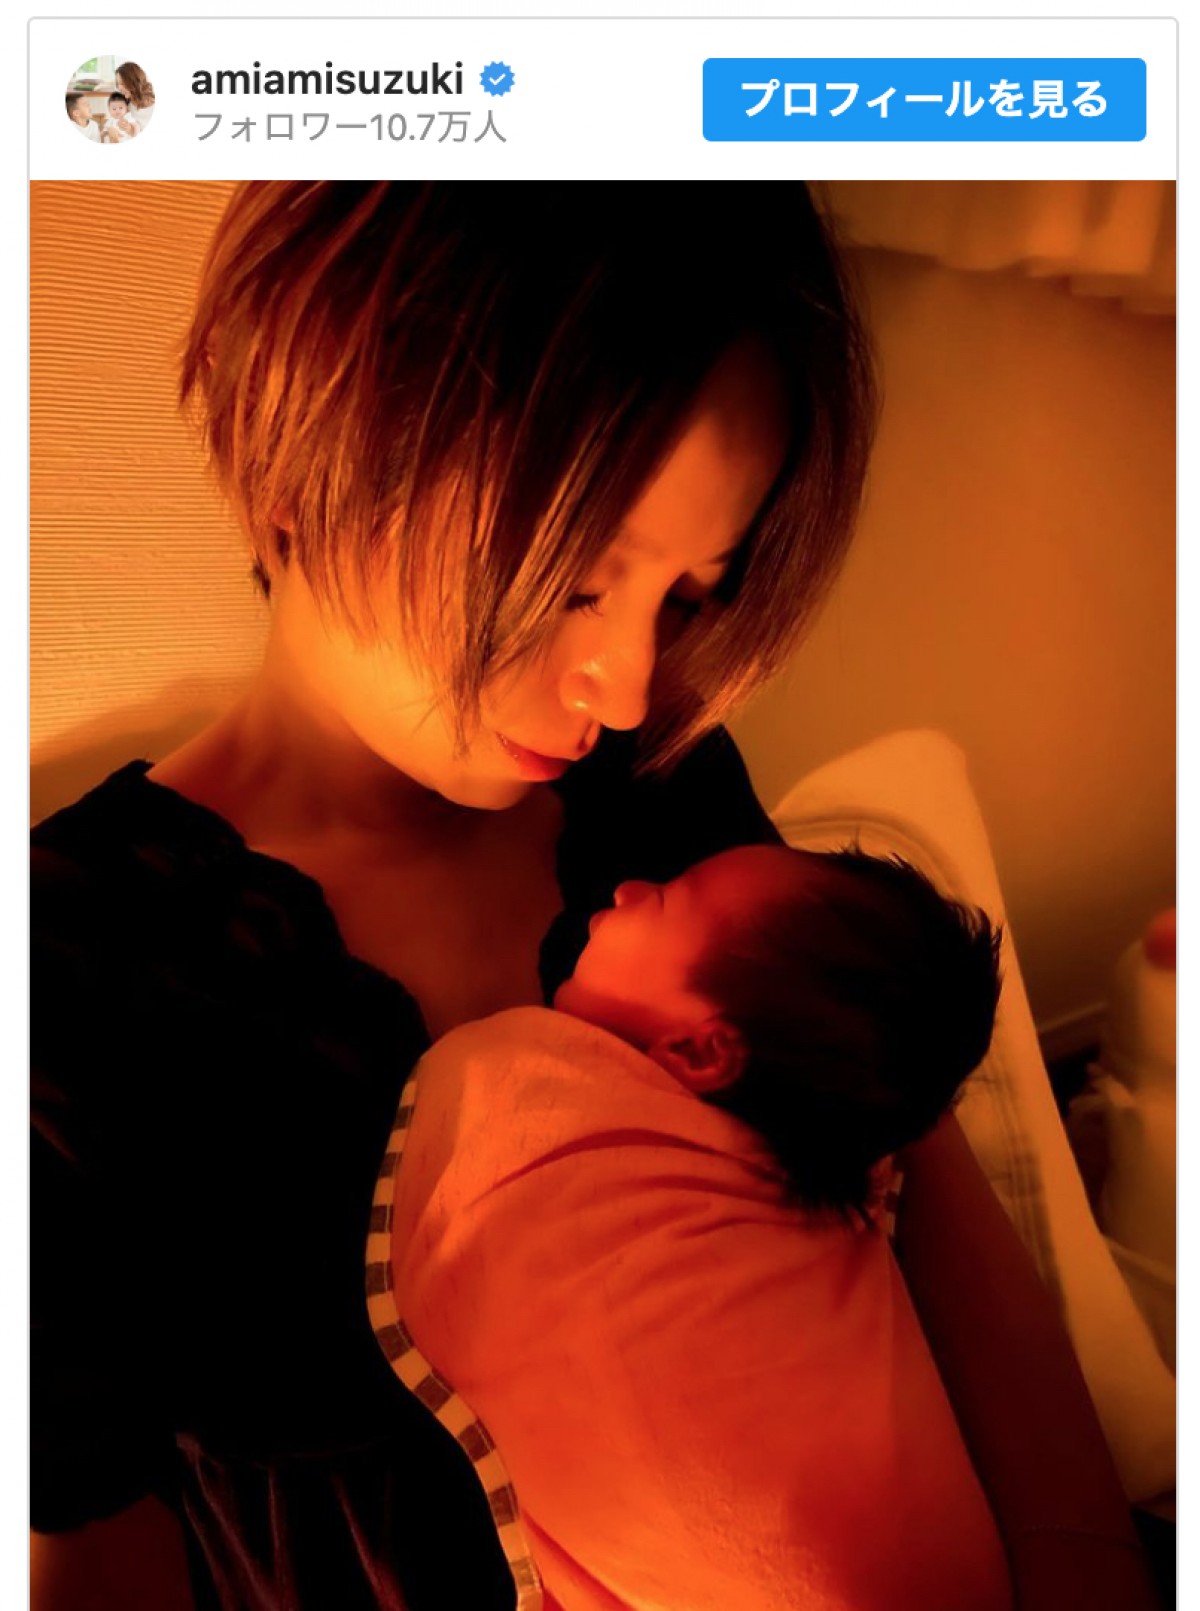 鈴木亜美、生後10日我が子との授乳タイムに感じる“絆”語る「積み重ねた時間が母になった実感に」